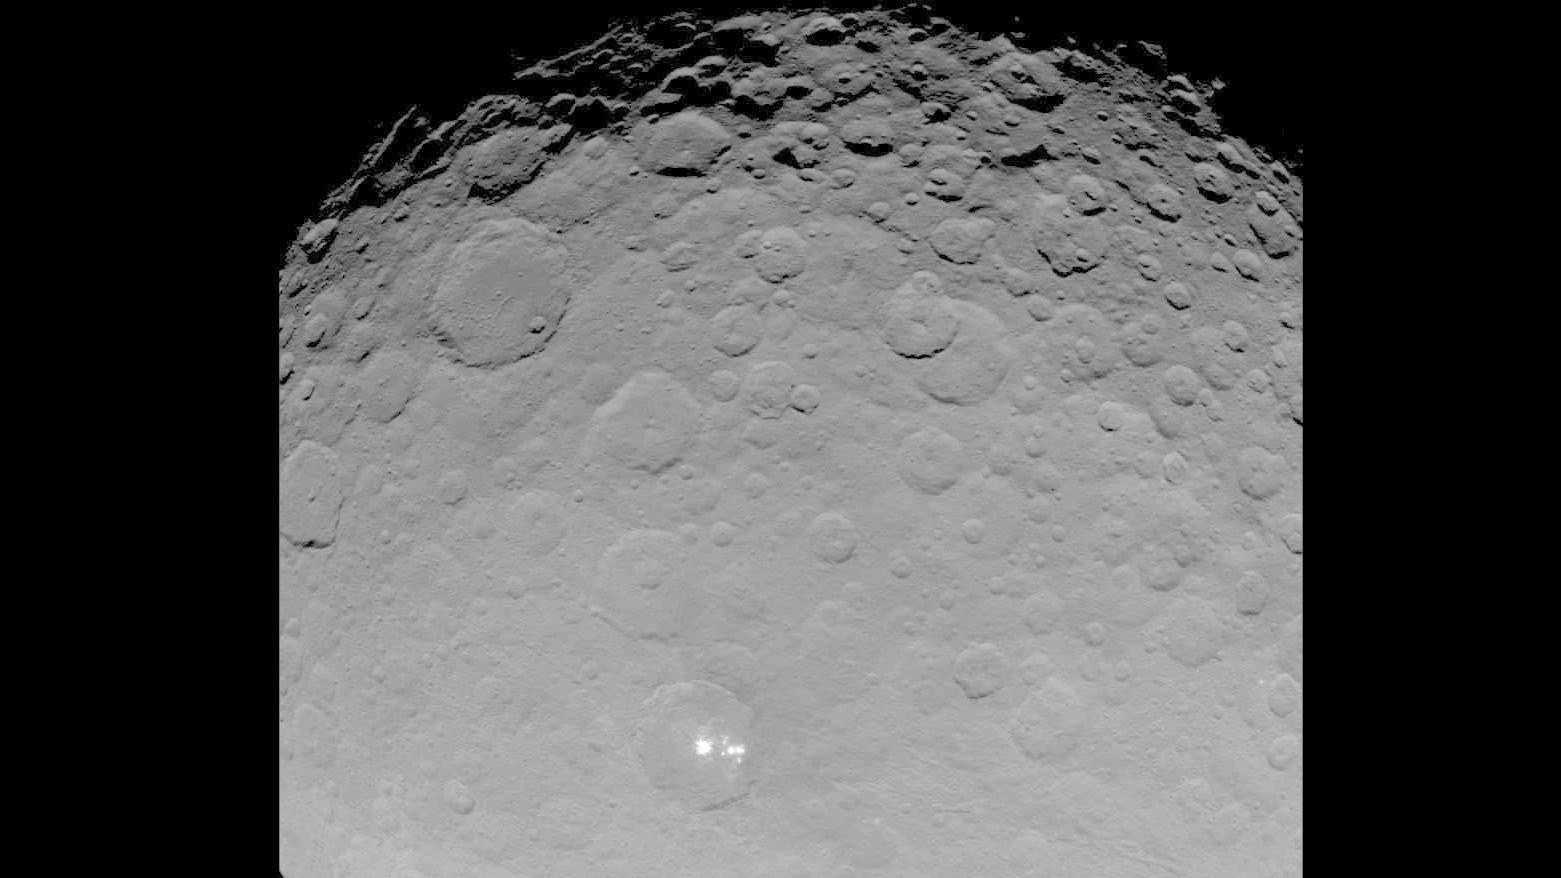 Zwergplanet Ceres und seine hellen Flecken